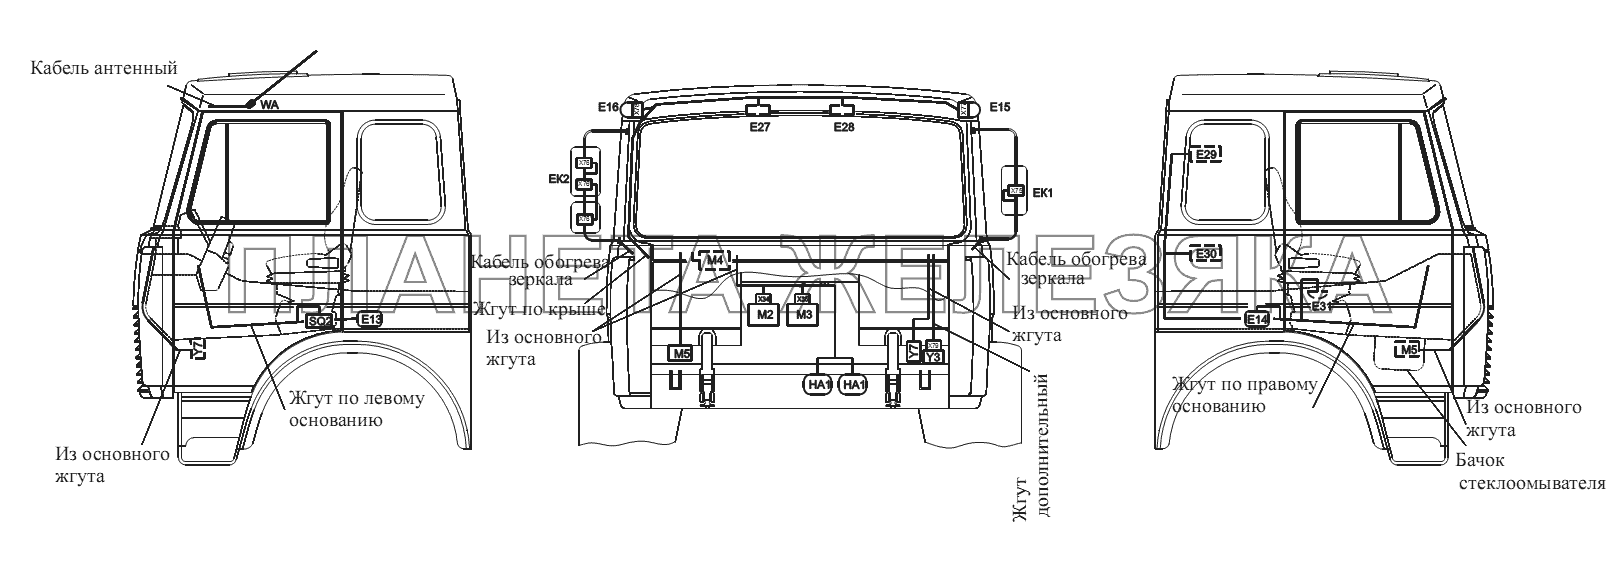 Расположение разъемов и элементов электрооборудования на большой кабине автомобилей-самосвалов с задней разгрузкой и самосвальных шасси МАЗ-555102, 5551А2